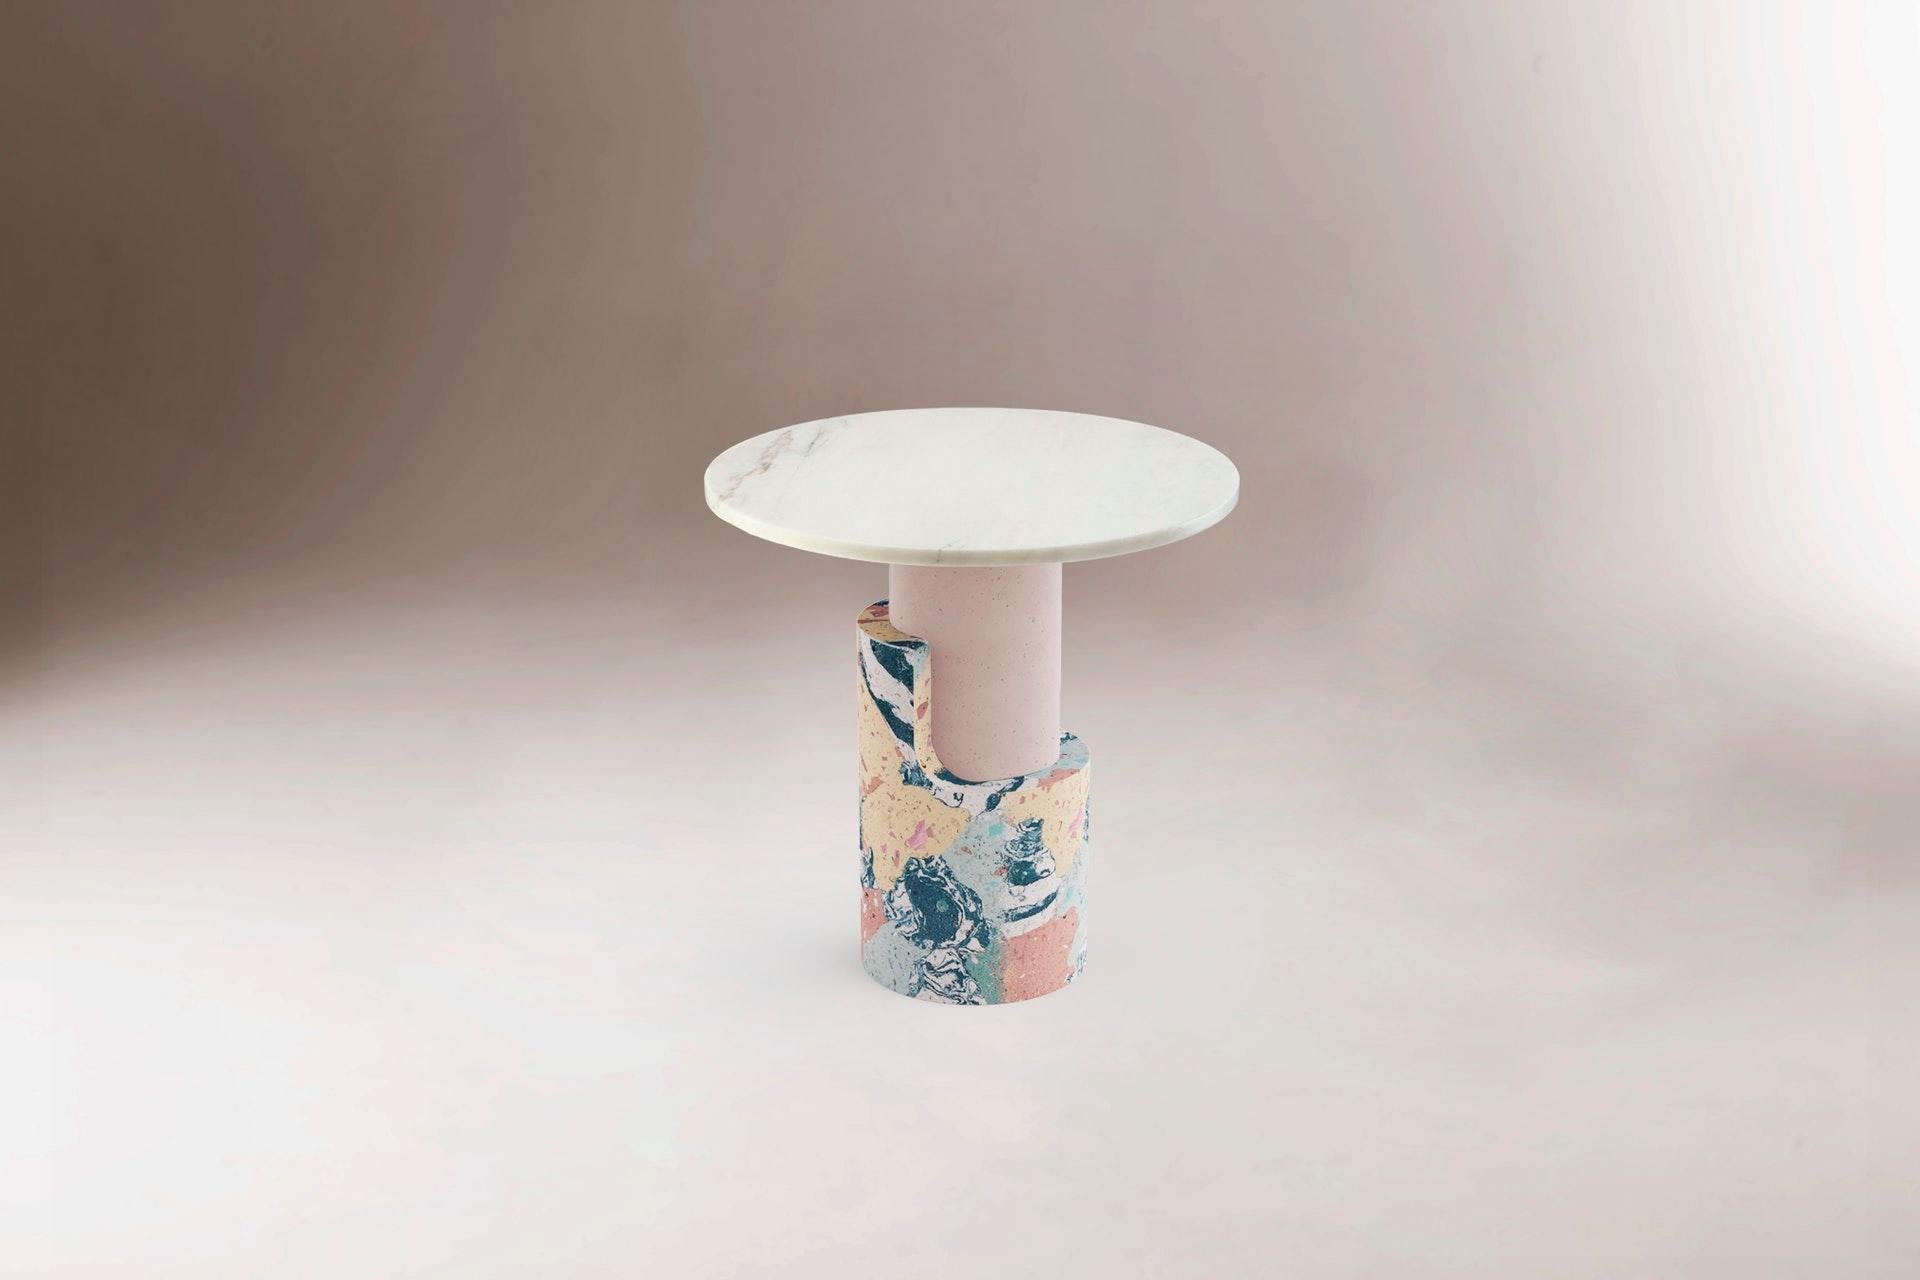 Table d'appoint en marbre Braque Contemporary de Dooq
Dimensions : L 60 x P 60 x H 55 cm
Matériaux : Entièrement fait à la main en marbre

Produit
La table d'appoint Braque est une table d'appoint élégante et raffinée créée par Dooq. Braque est